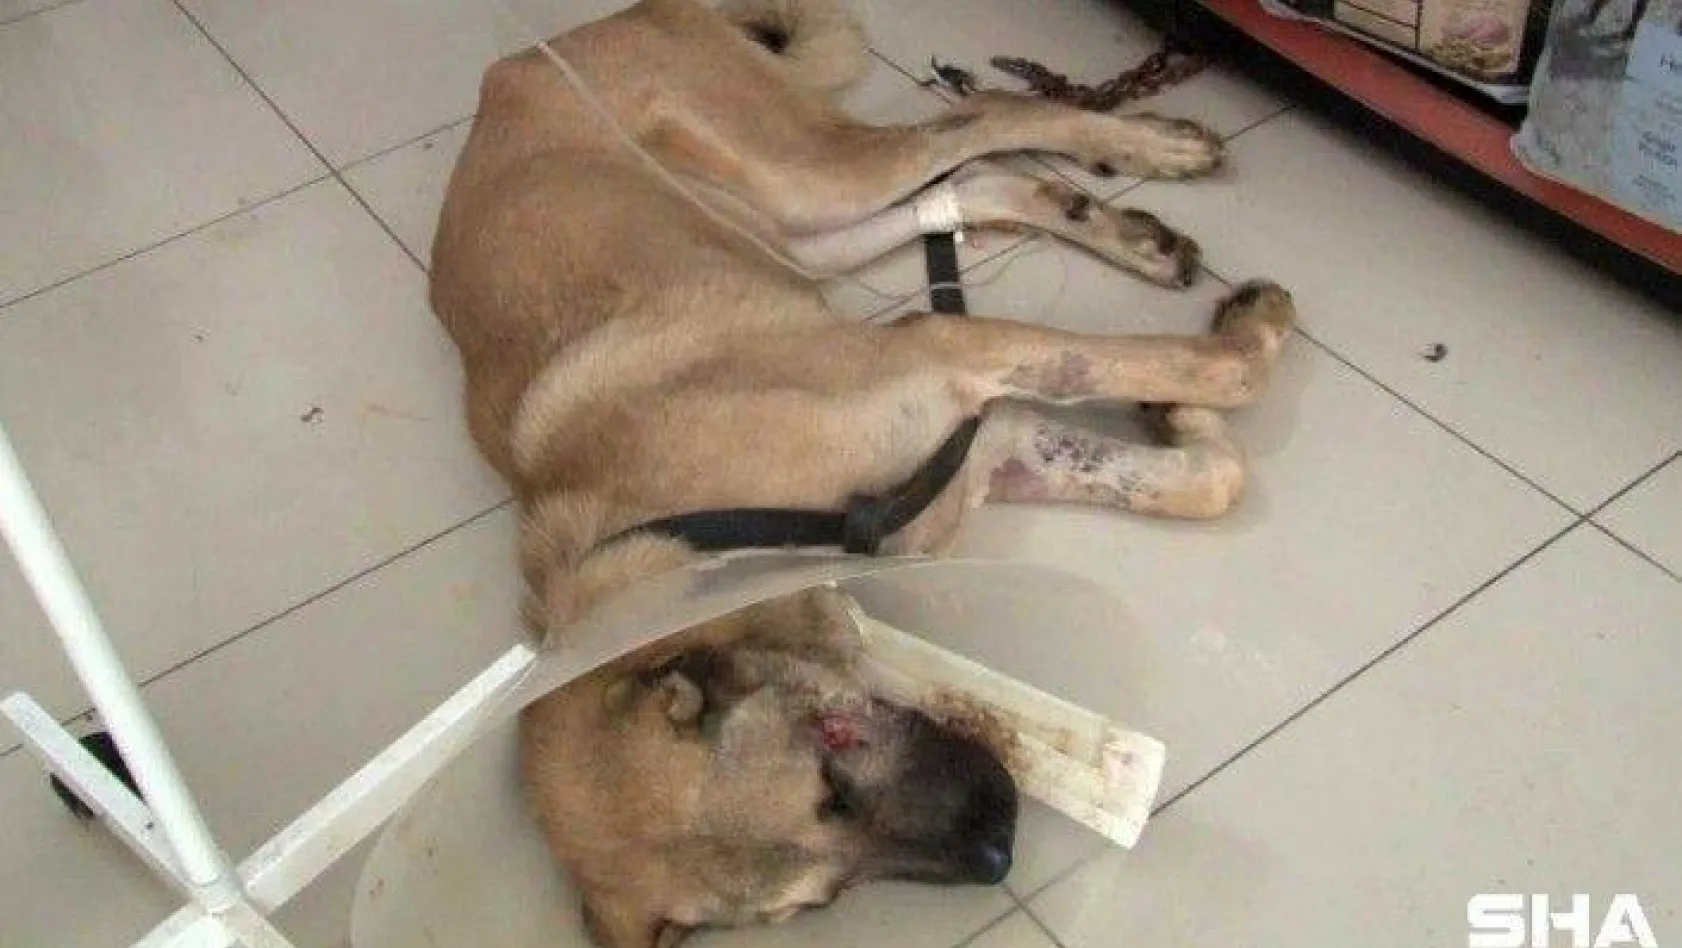 (ÖZEL) Silahlı saldırıya uğrayan köpeğin yaşam mücadelesi devam ediyor